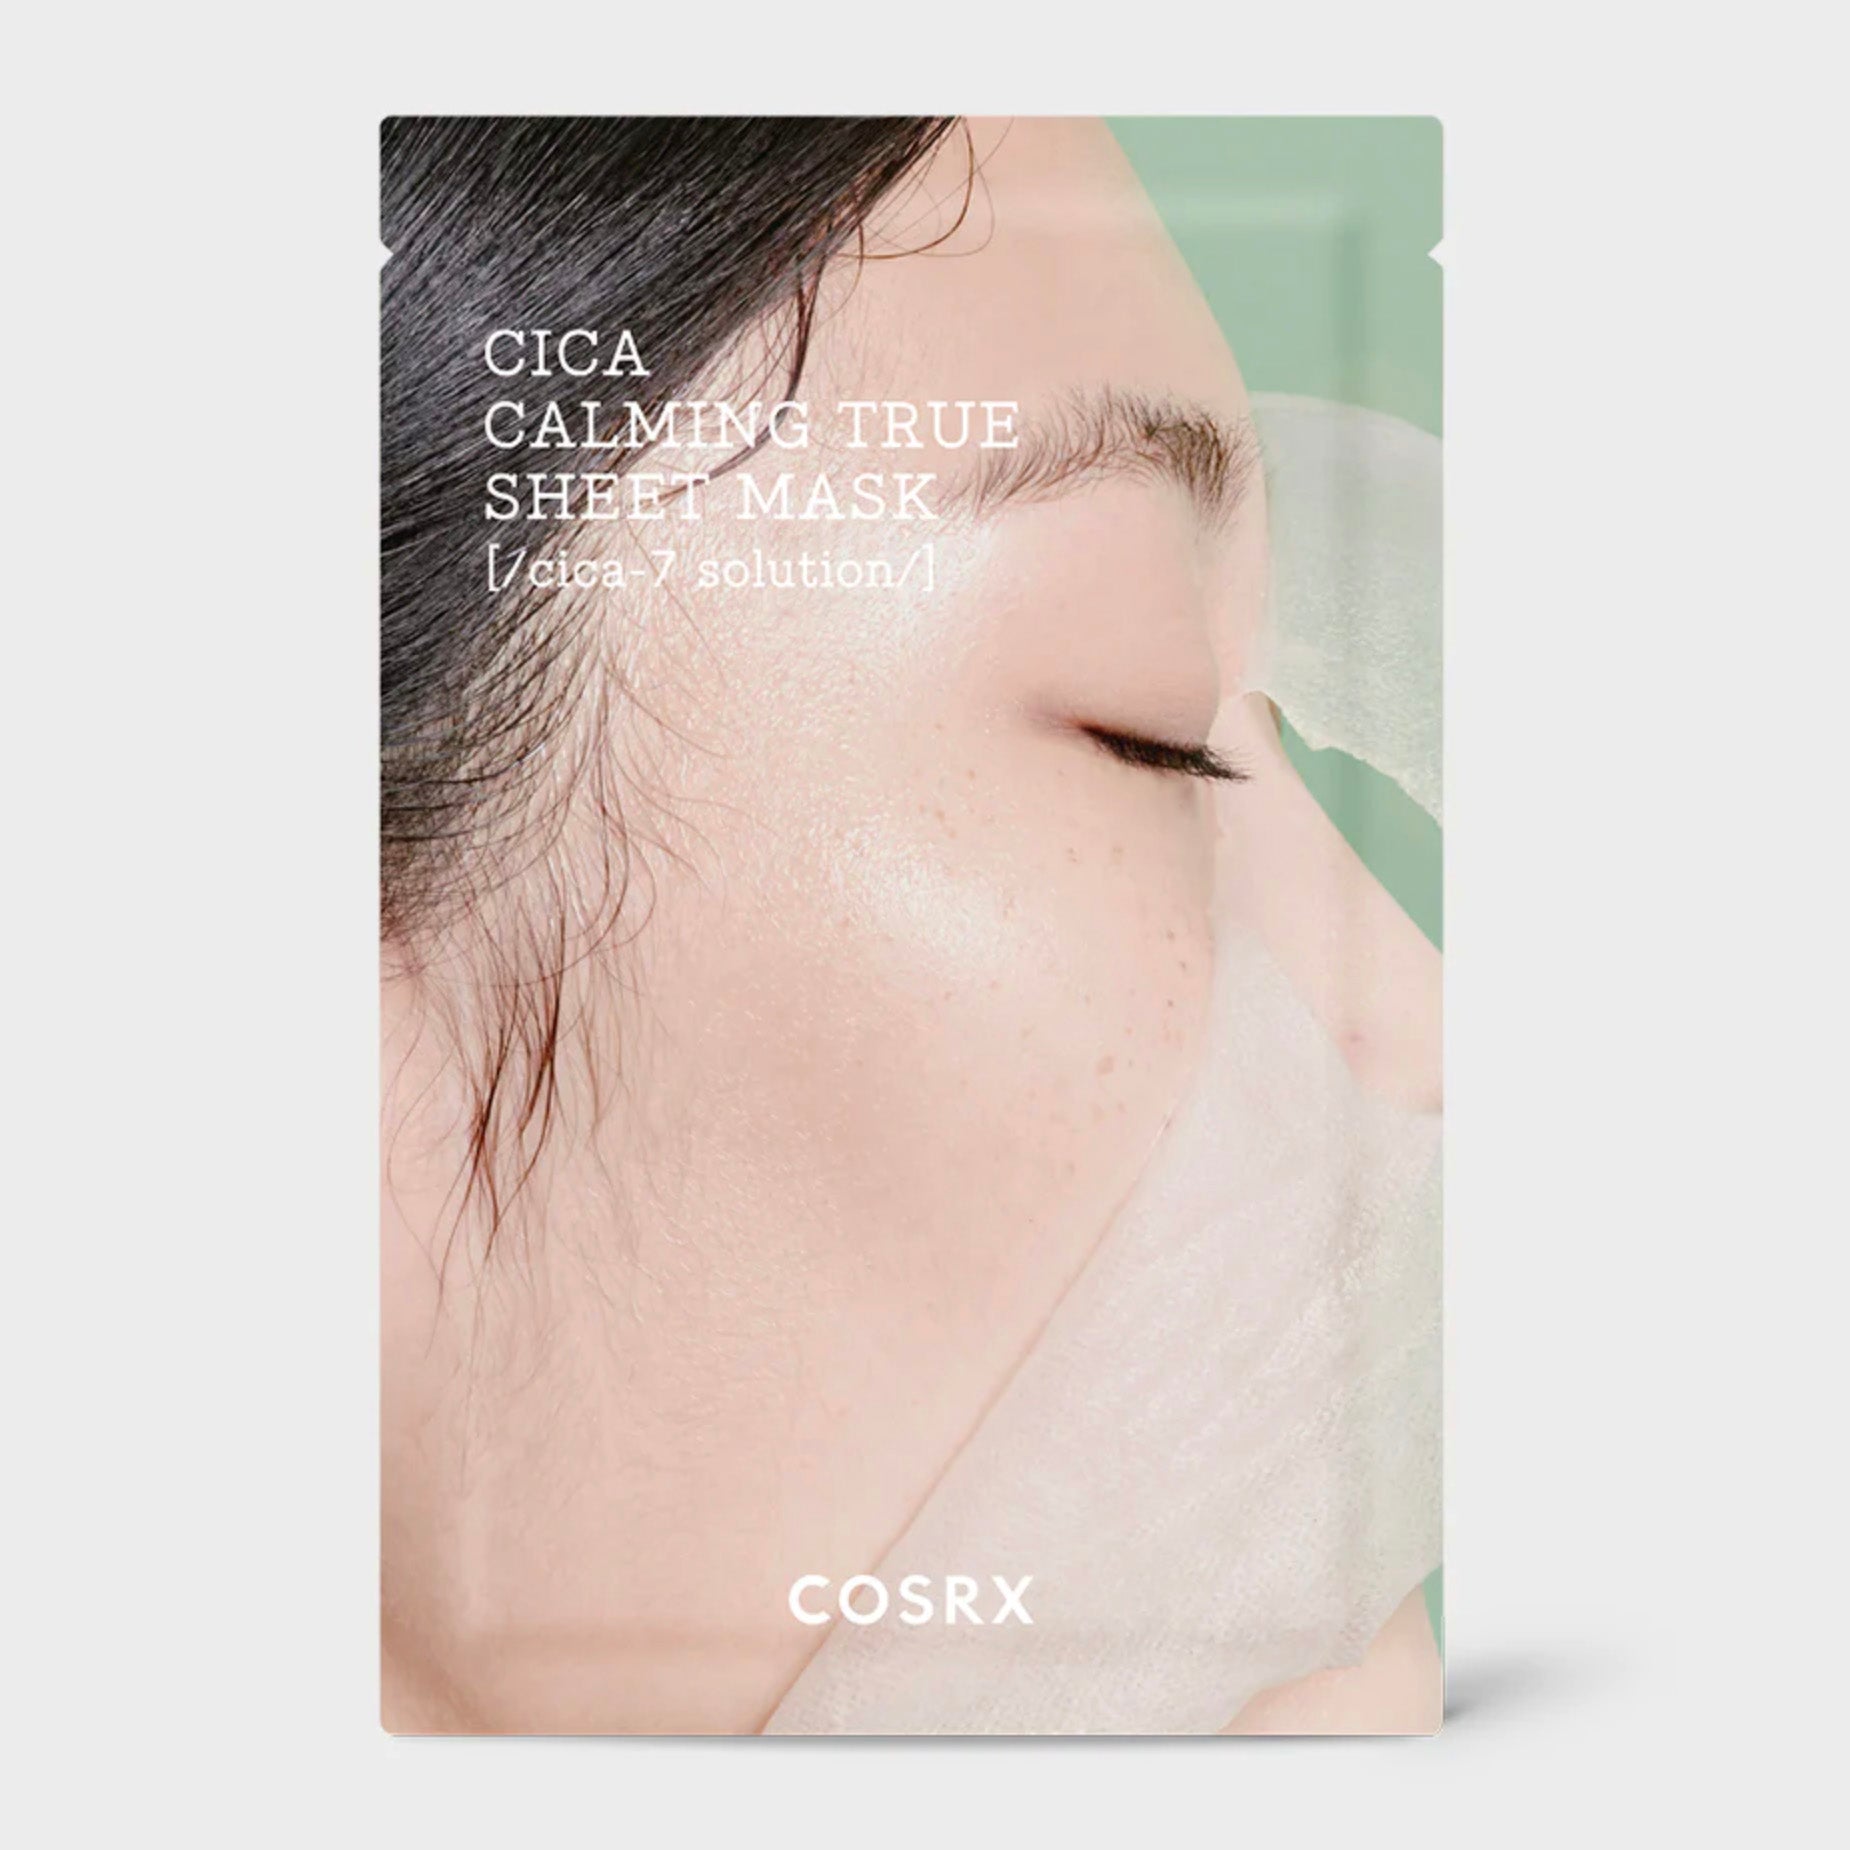 COSRX | Cica Calming True Sheet Mask